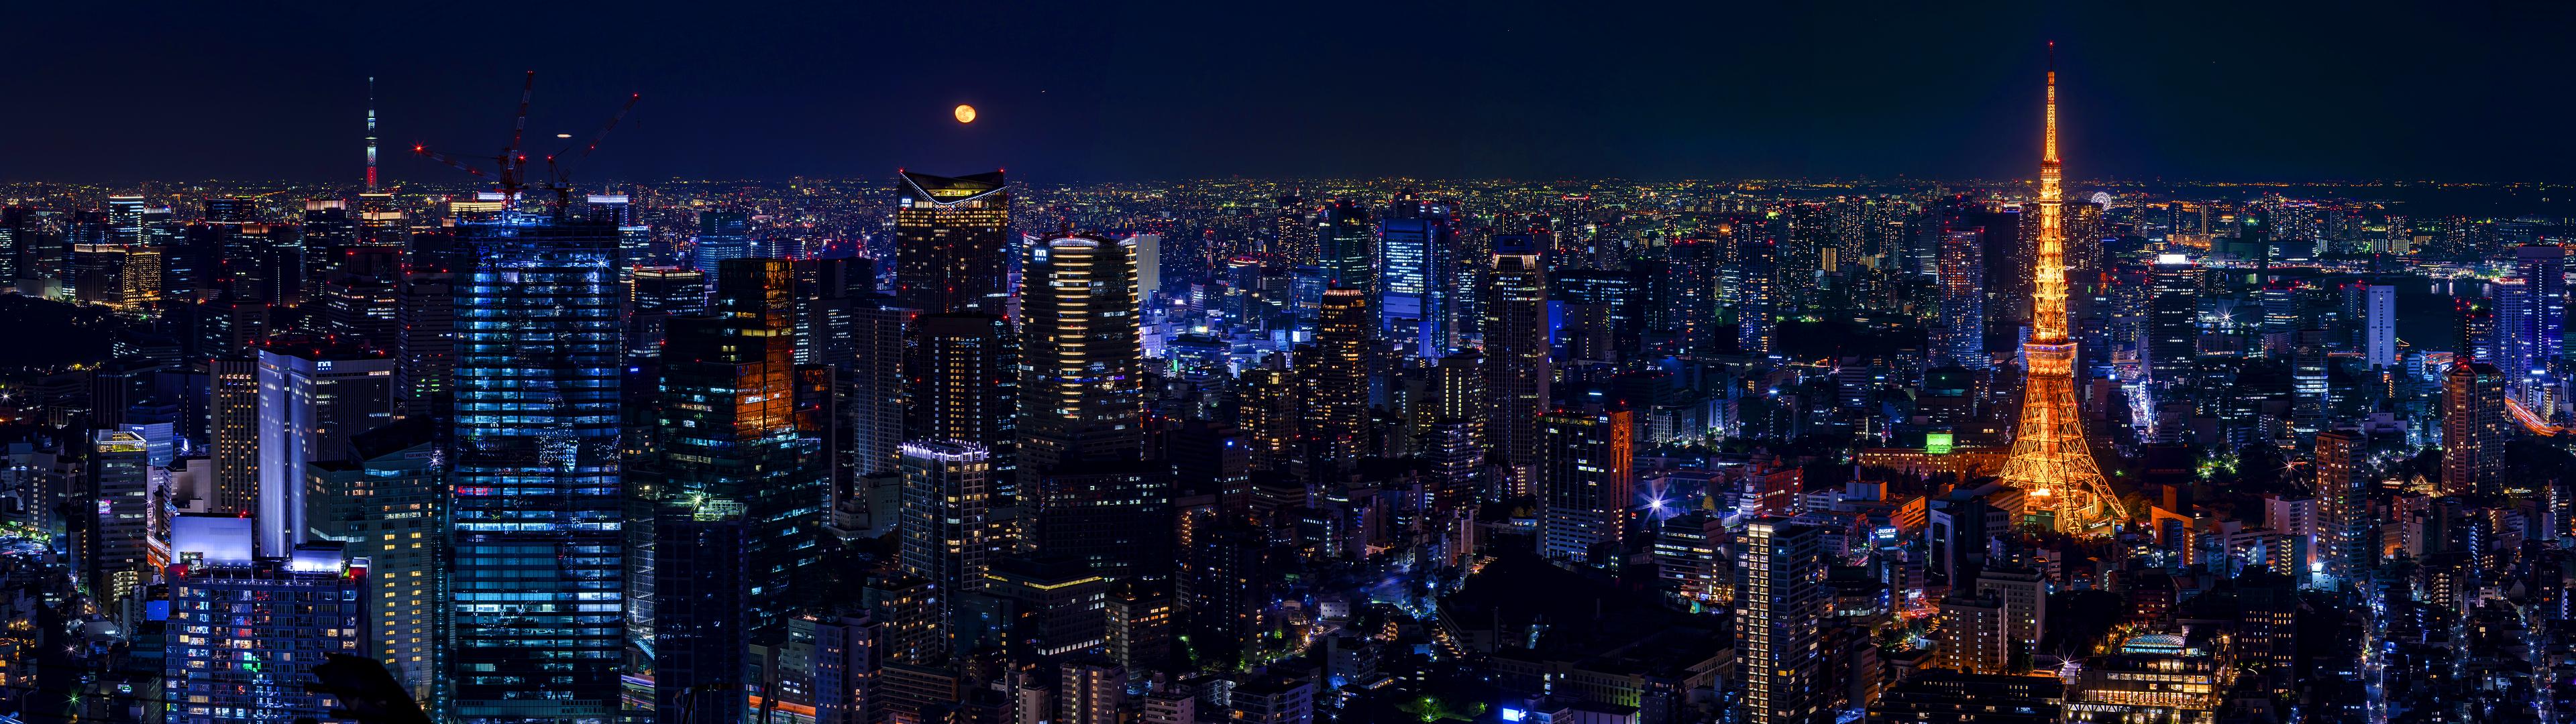 450040 descargar imagen ciudad, hecho por el hombre, tokio, edificio, paisaje urbano, japón, noche, rascacielos, torre de tokio, ciudades: fondos de pantalla y protectores de pantalla gratis